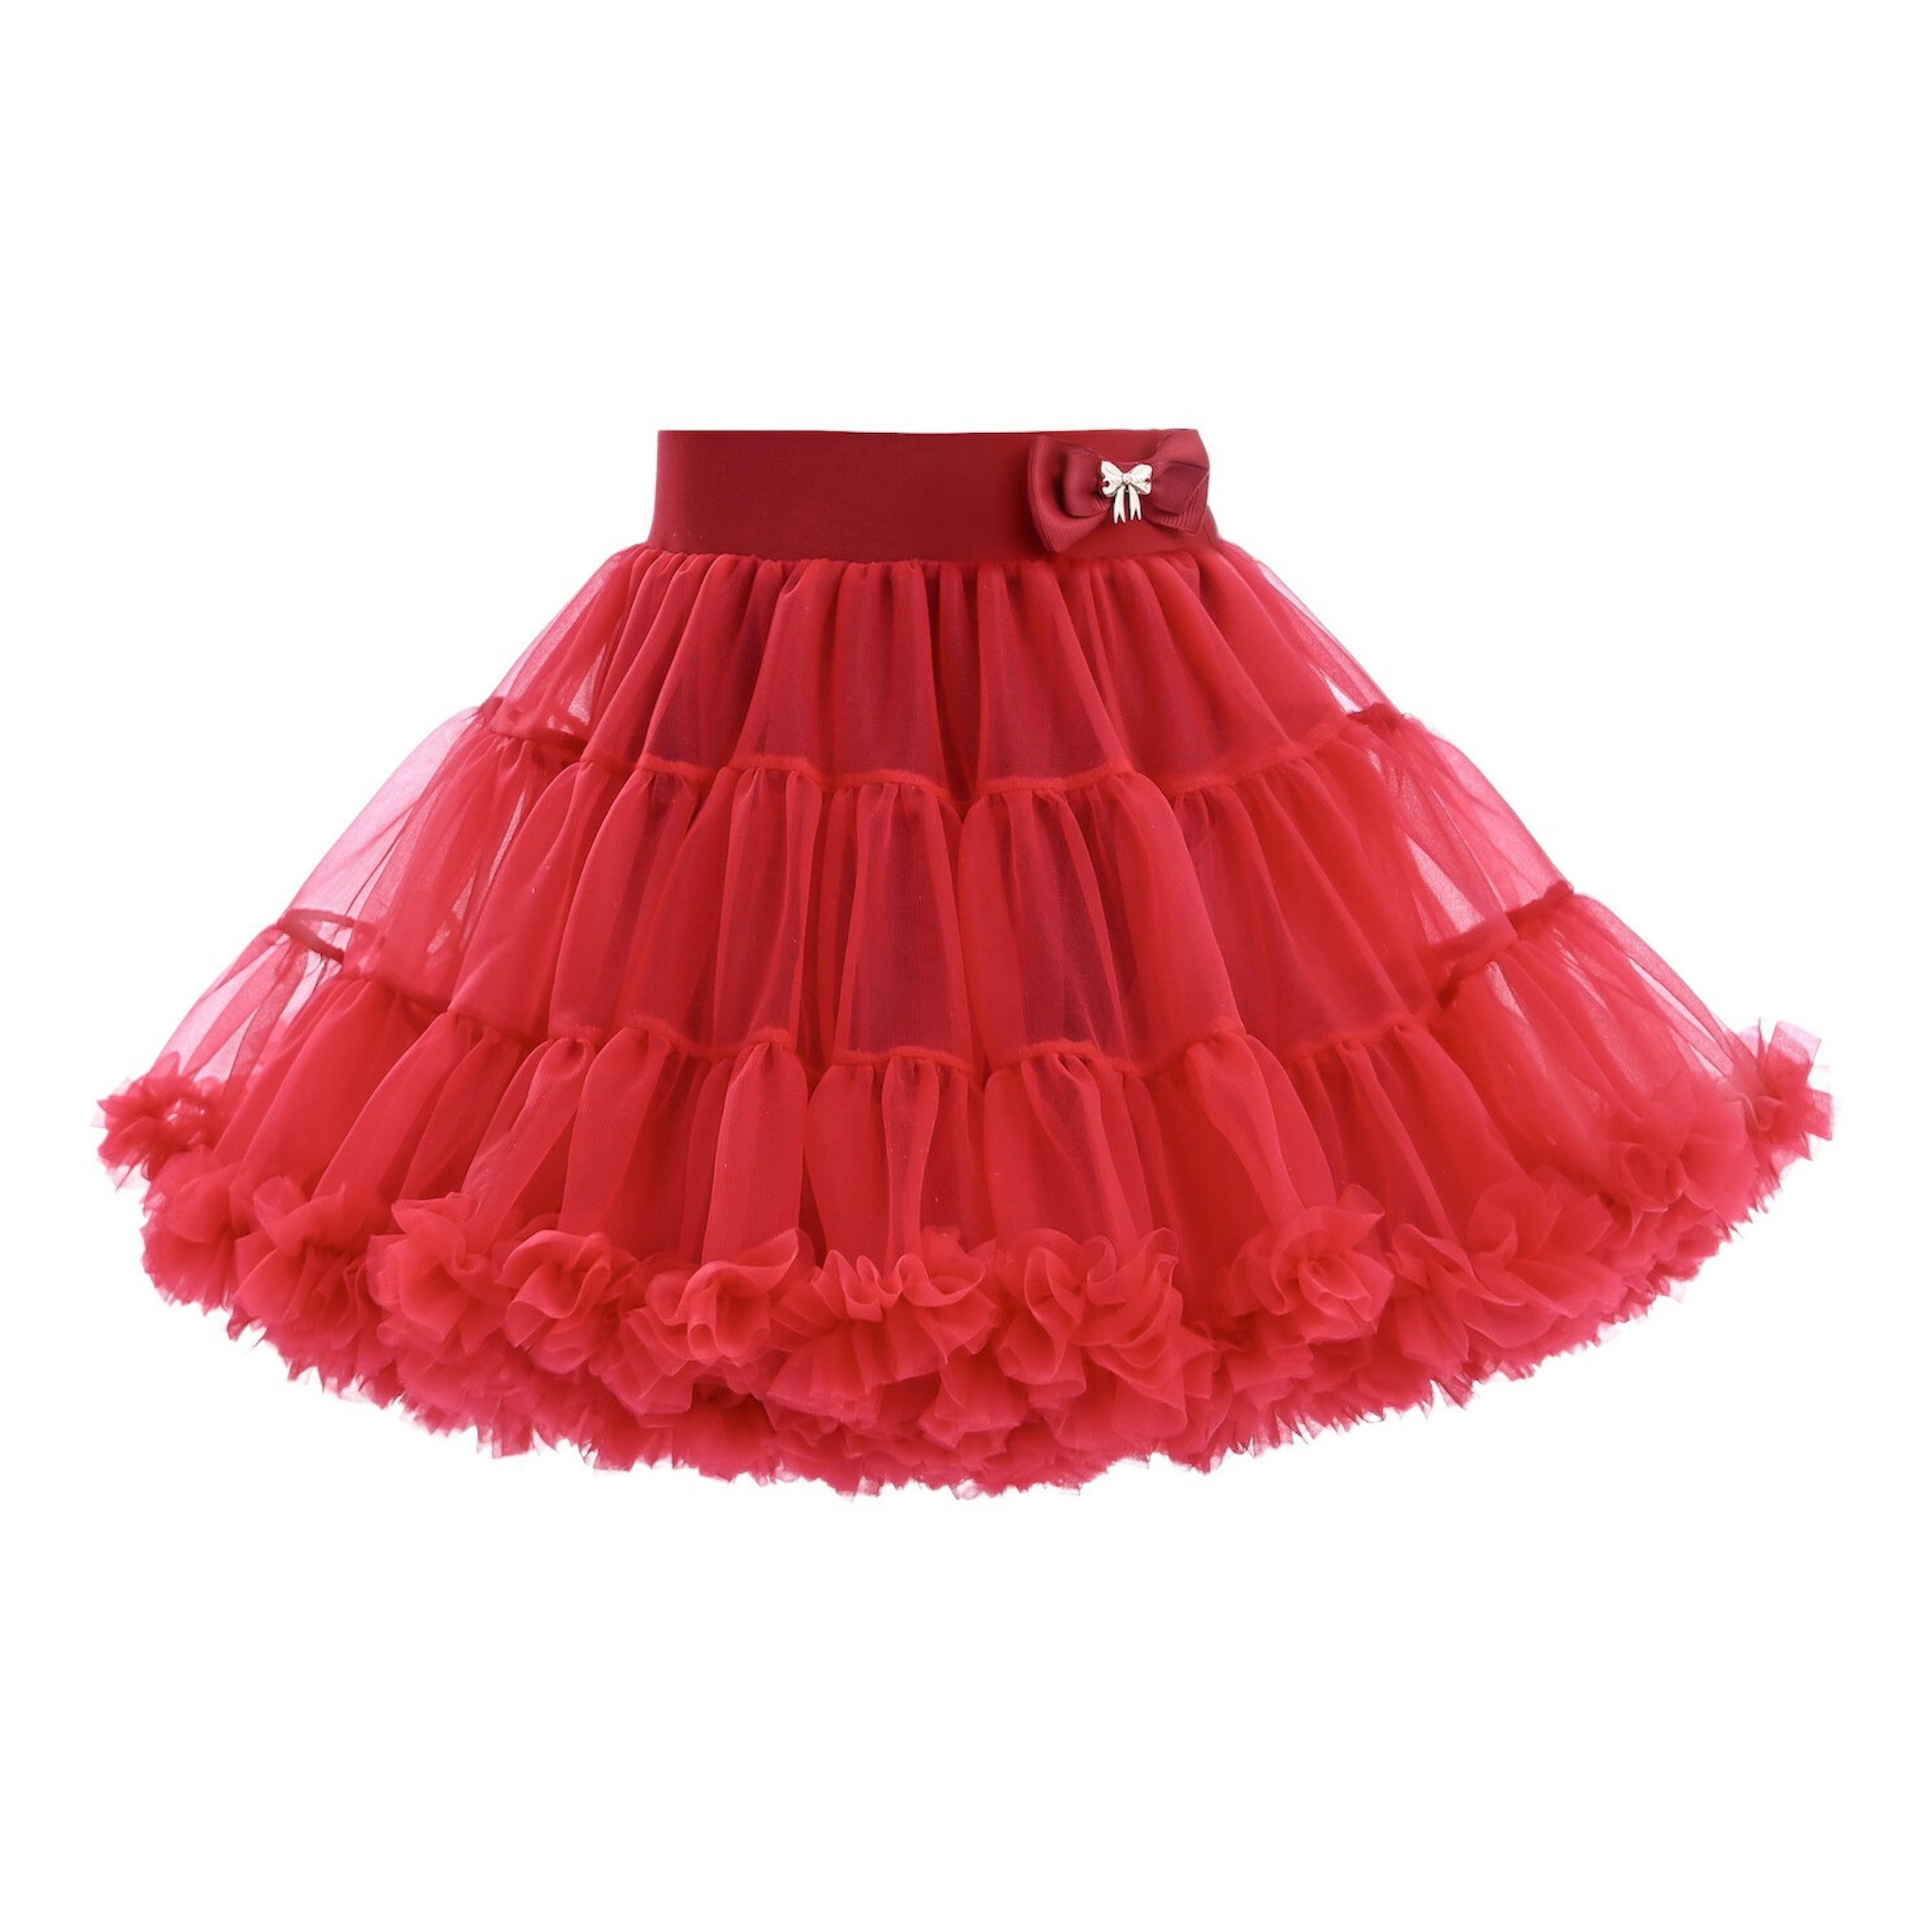 kids-atelier-mimi-tutu-kid-baby-girl-red-cherry-bow-tulle-skirt-mtts2416-red